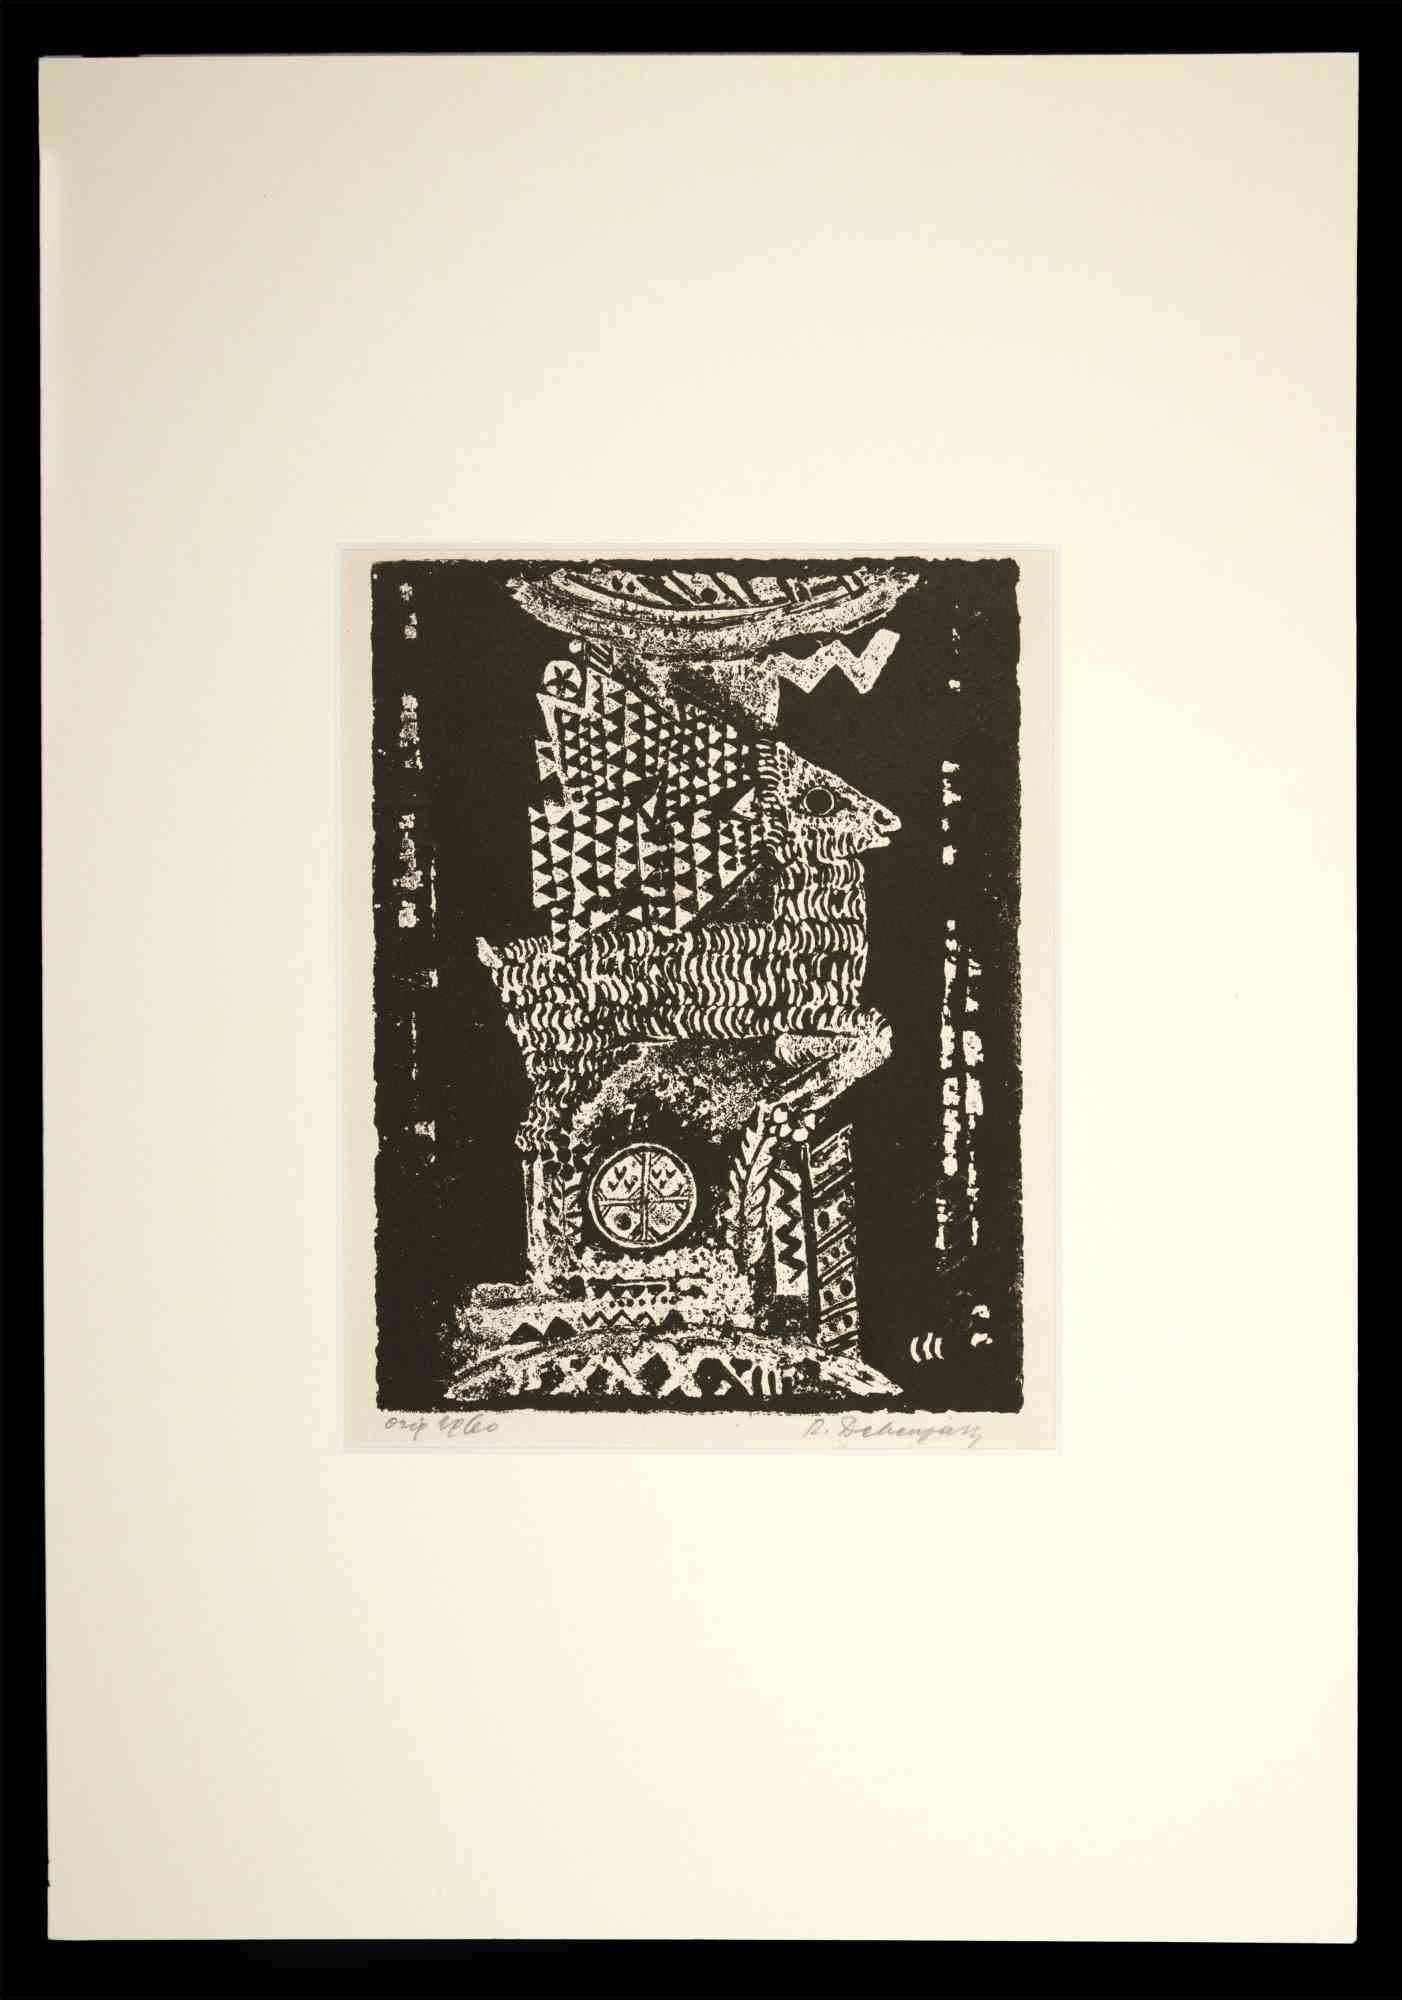 Totem - Drawing imprimé gravé sur bois - milieu du 20e siècle